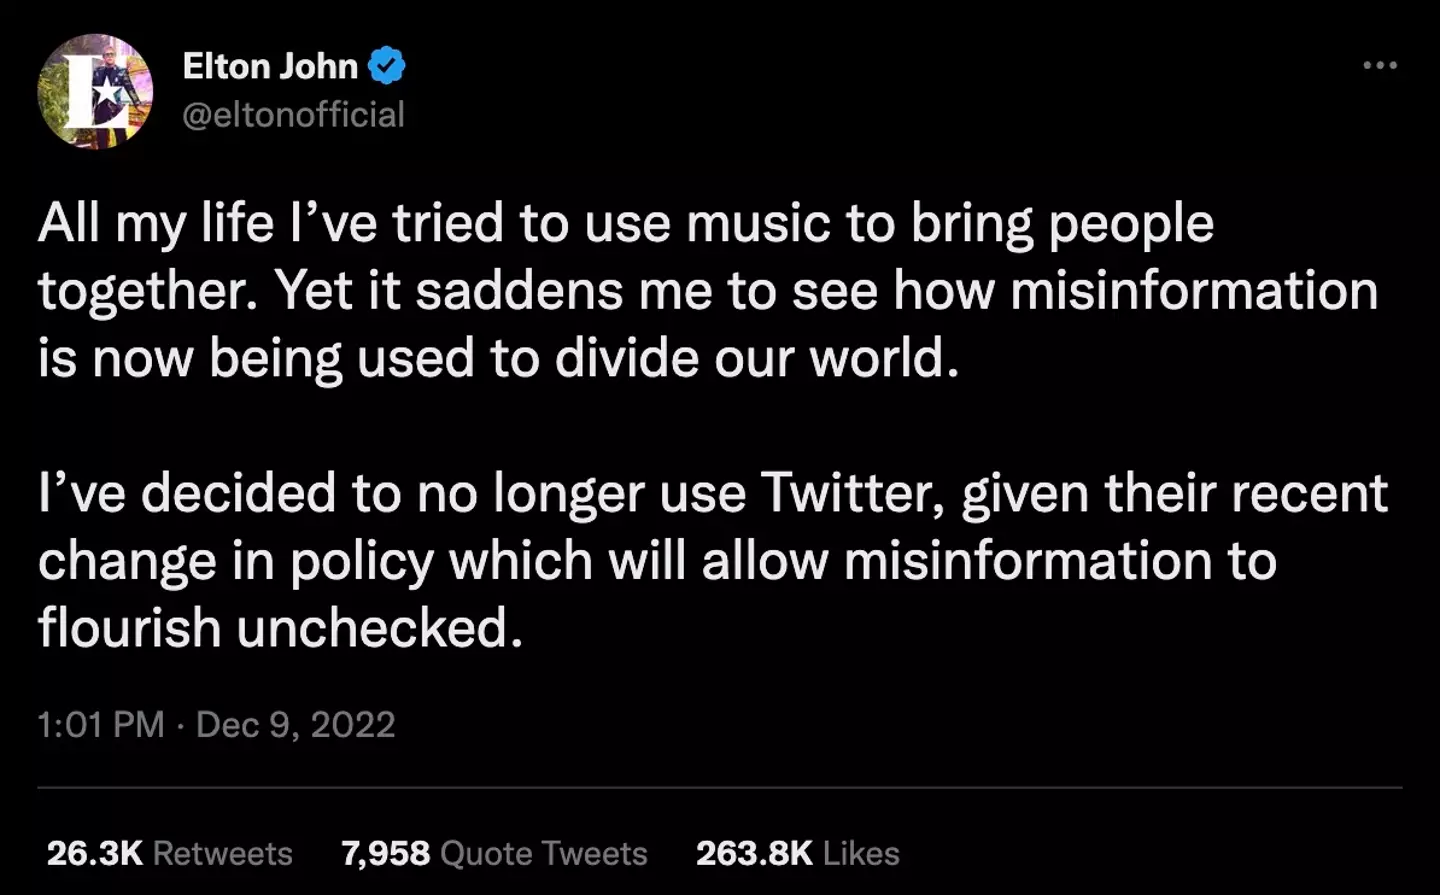 Elton John has quit Twitter.